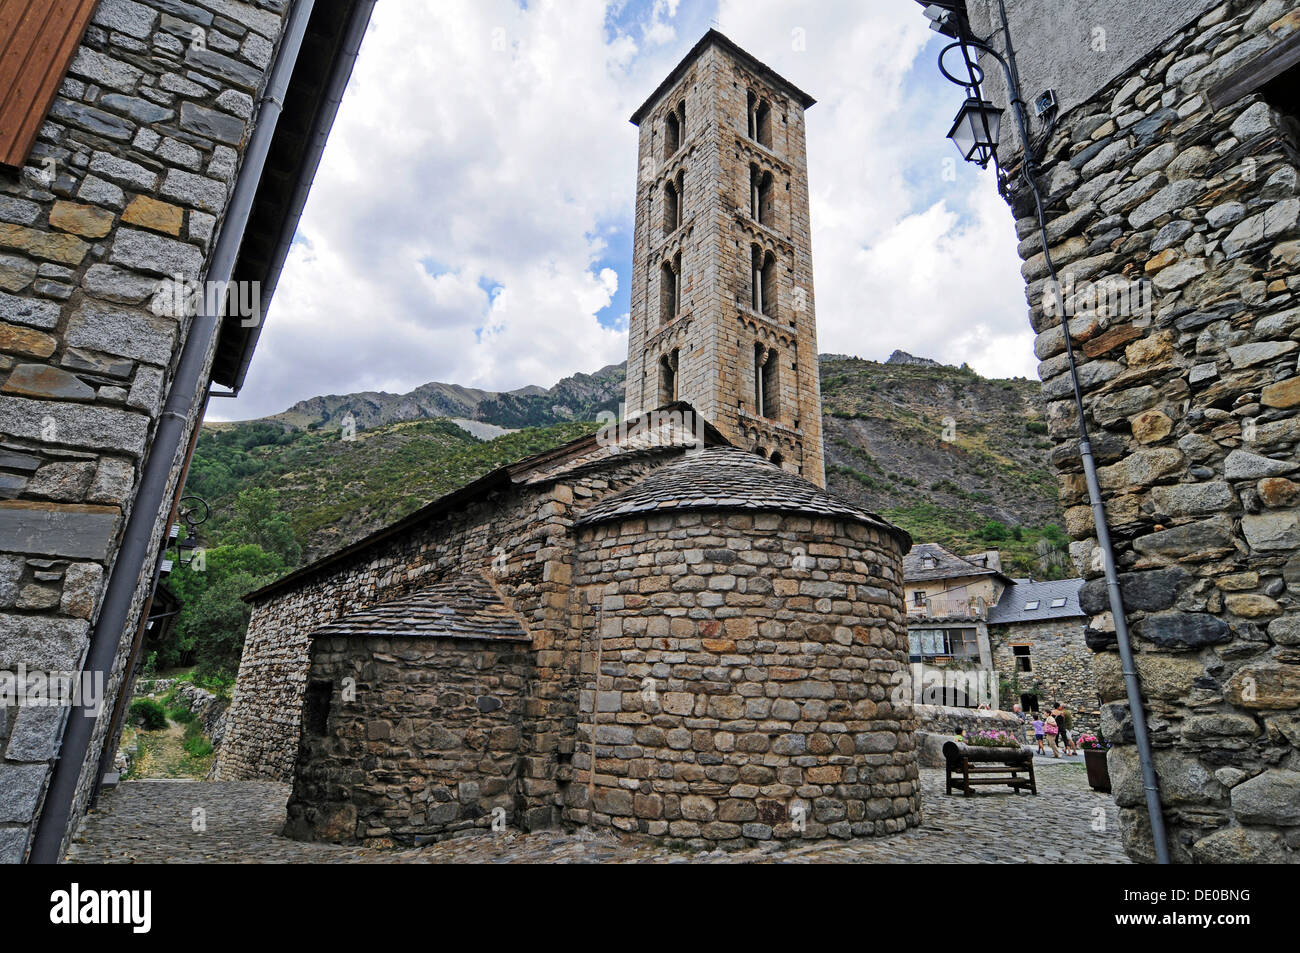 Santa Eulalia, église romane, Site du patrimoine culturel mondial de l'UNESCO, Erill la Vall, la Vall de Boi, Pyrénées, province de Lleida Banque D'Images